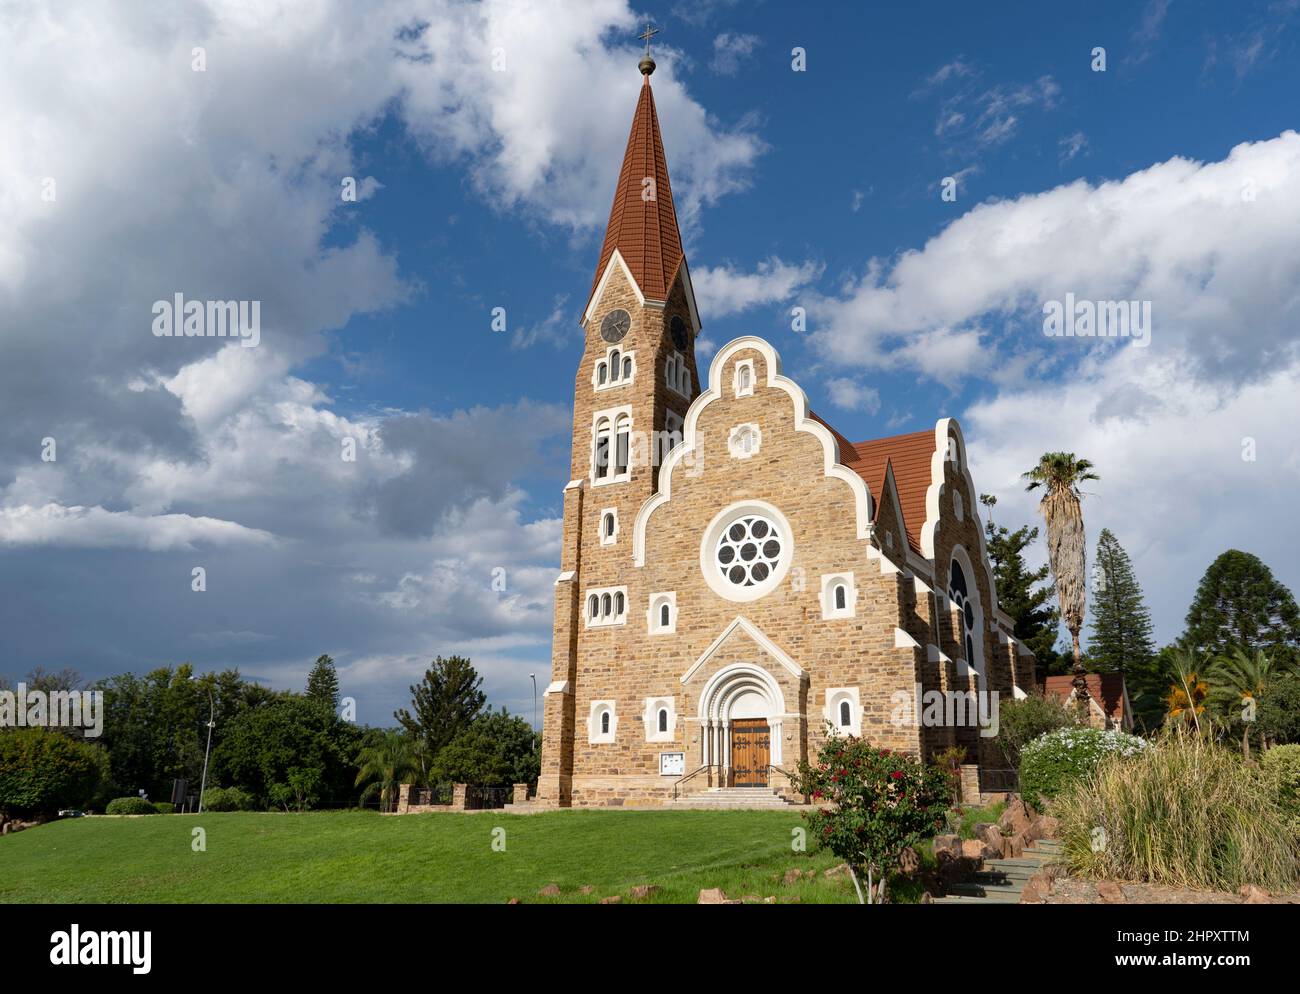 Edificio emblemático de Christus Kirche, o Iglesia de Cristo en Windhoek, Namibia Foto de stock